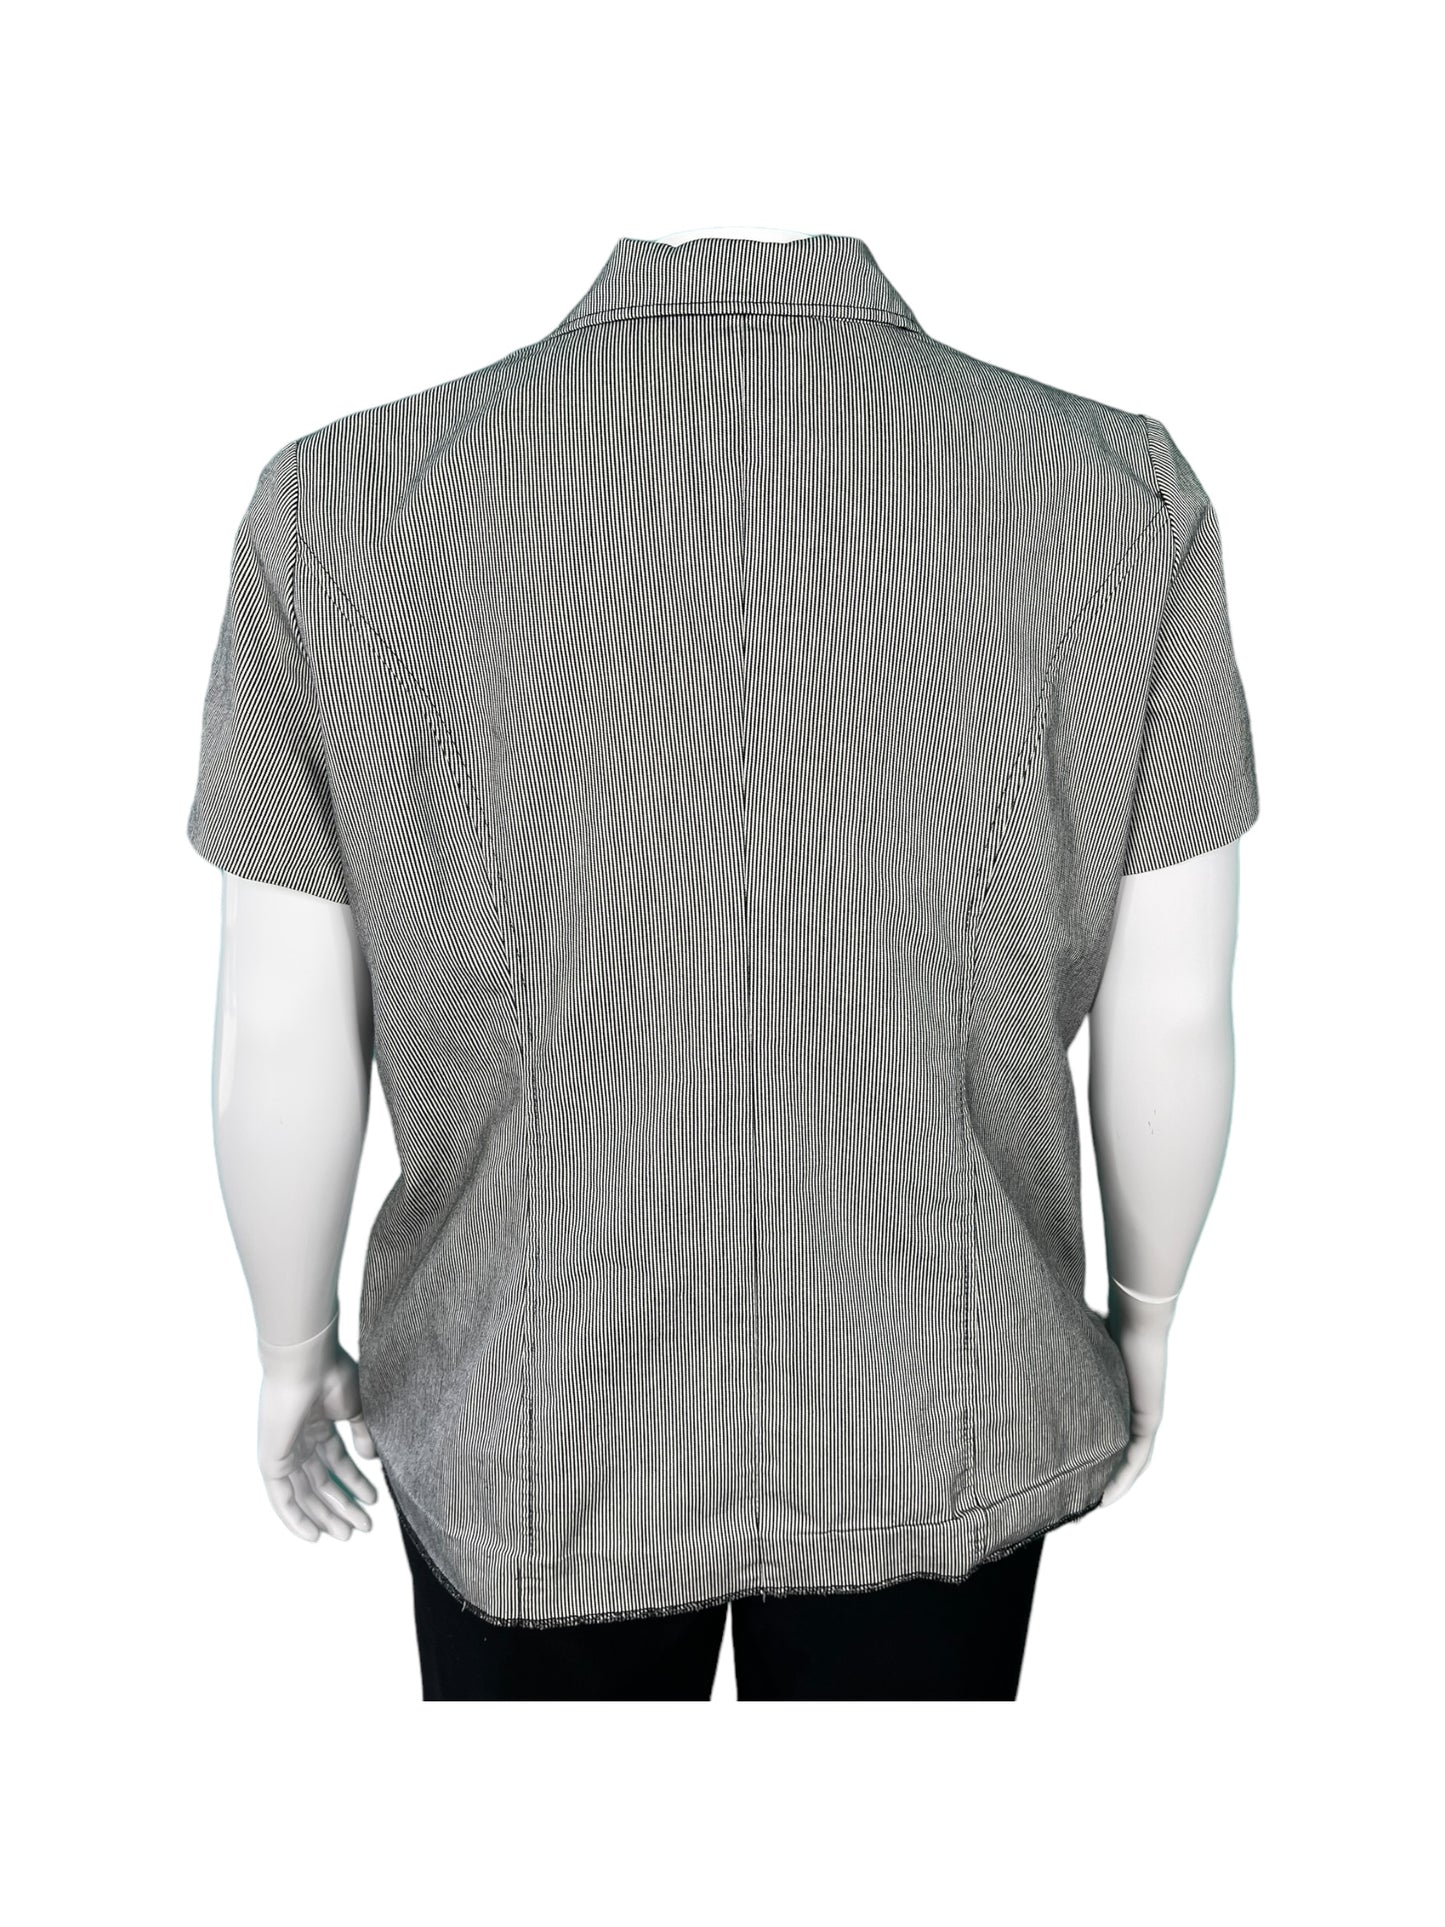 Grey & White Short Sleeved Striped V-neck Blazer (16)